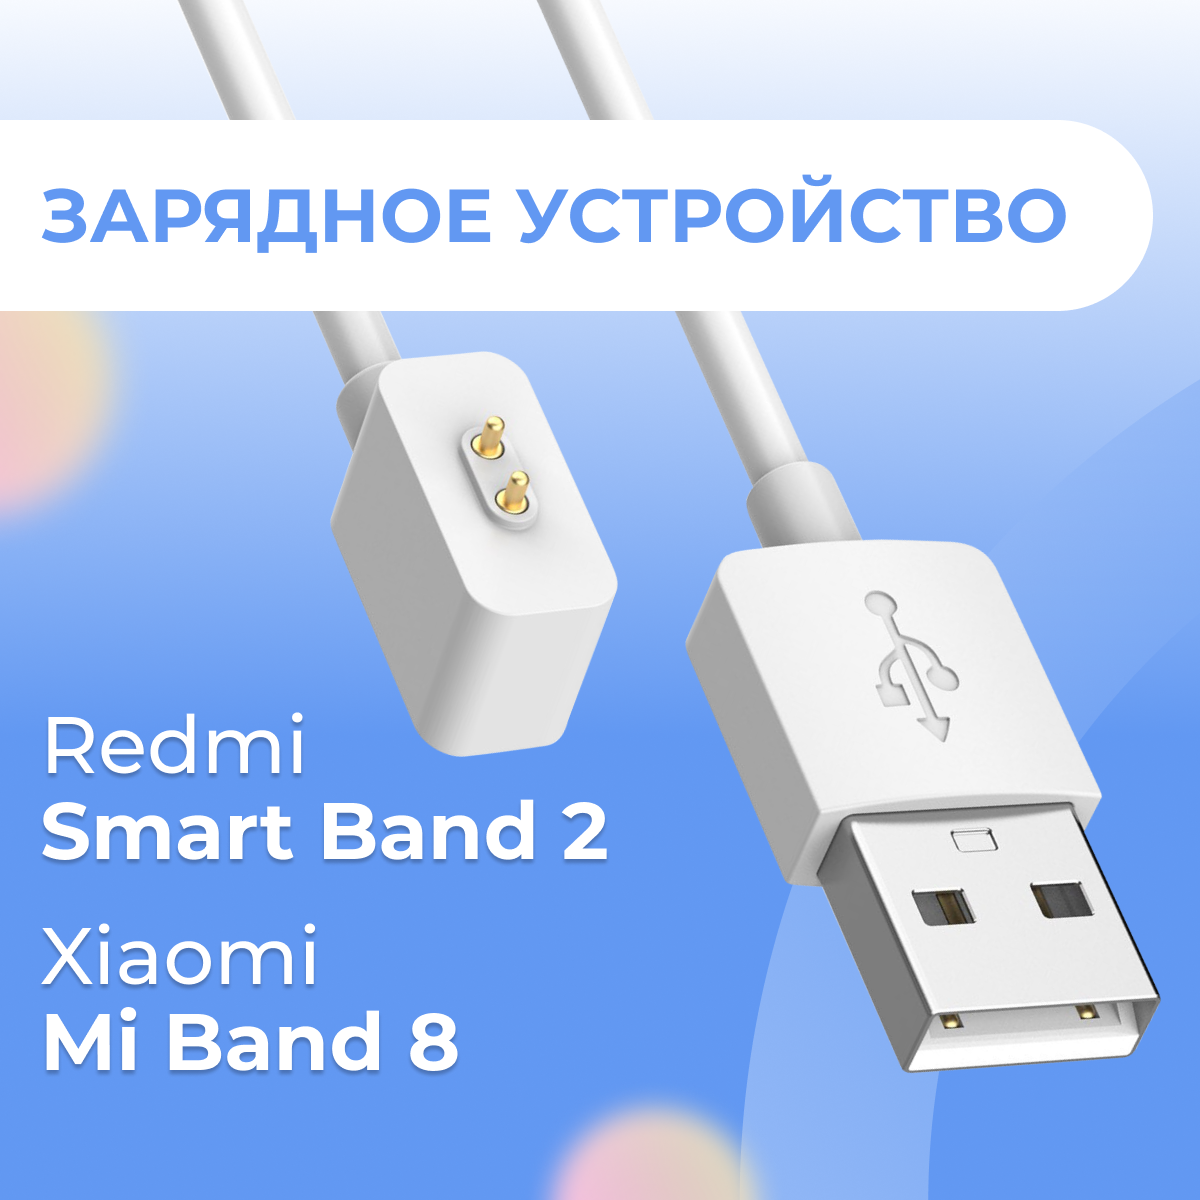 Зарядное устройство для смарт часов Xiaomi Mi Band 8 и Redmi Smart Band 2 / Магнитный кабель для зарядки Сяоми Ми Бэнд 8 и Редми Смарт Бэнд 2 / Черный